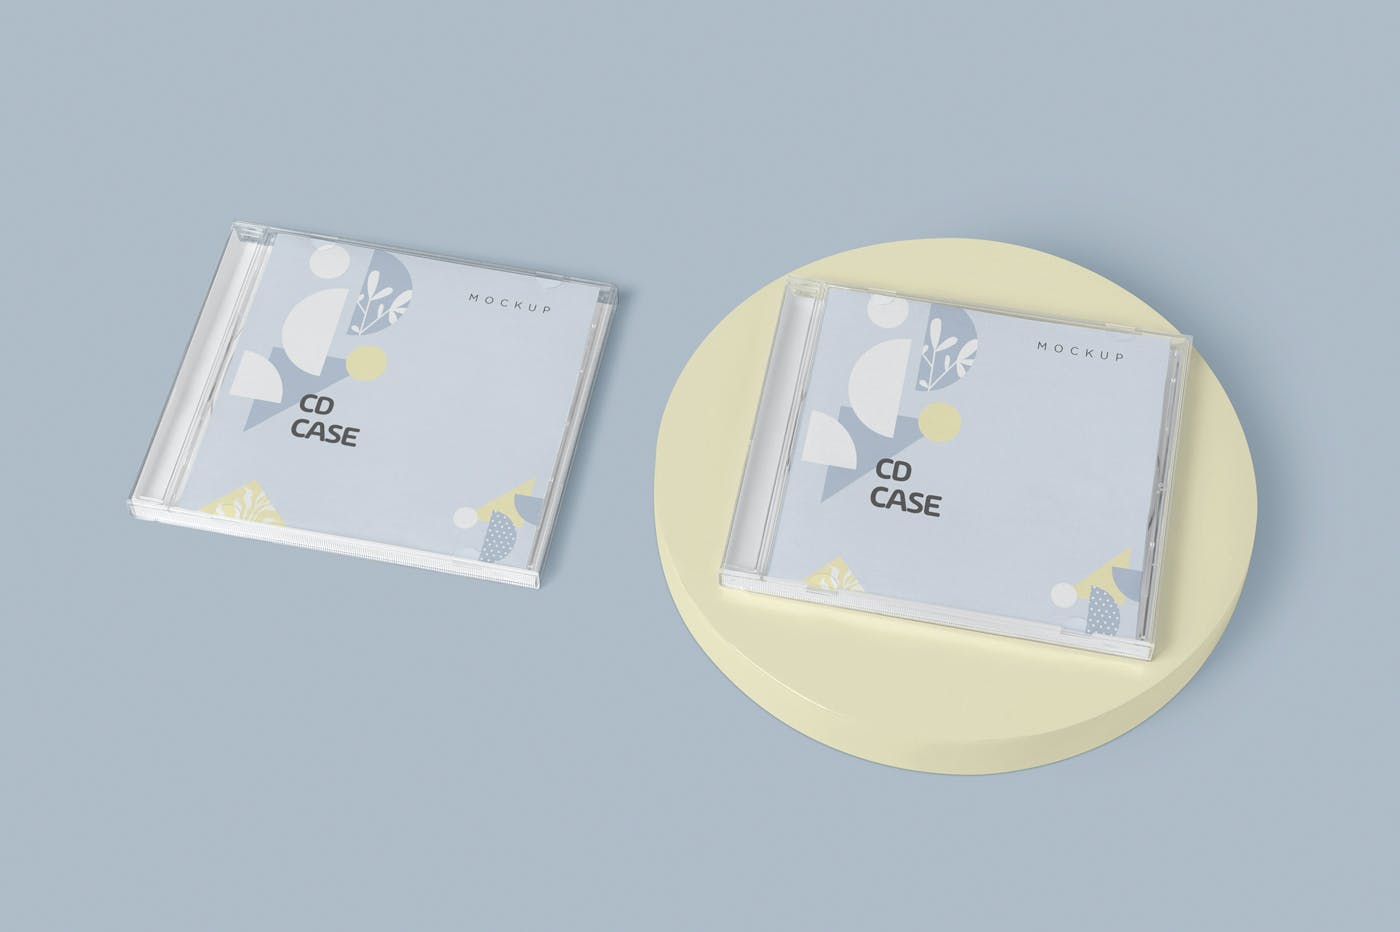 古典音乐CD标签和包装盒样机模版素材9GZQ7EC插图5